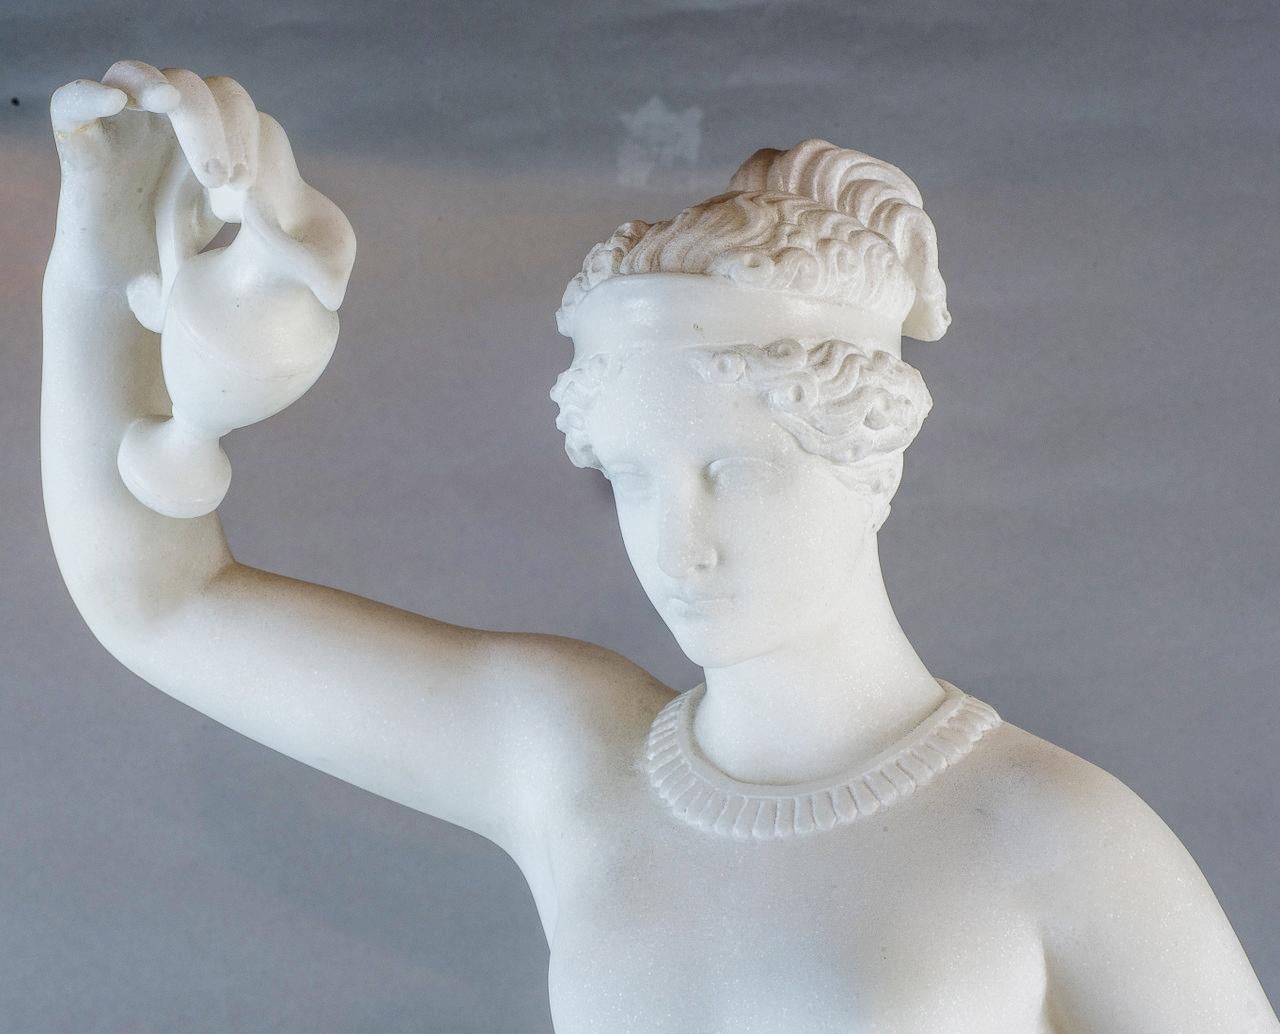 Marbre néoclassique finement sculpté d'une figure féminine debout portant une tasse et un pichet.  
Le marbre blanc cristallin crée des effets de lumière brillants. 

Origine : italienne
Date : circa 1890
Dimension : 27 1/4 po x 11 po x 12 po.